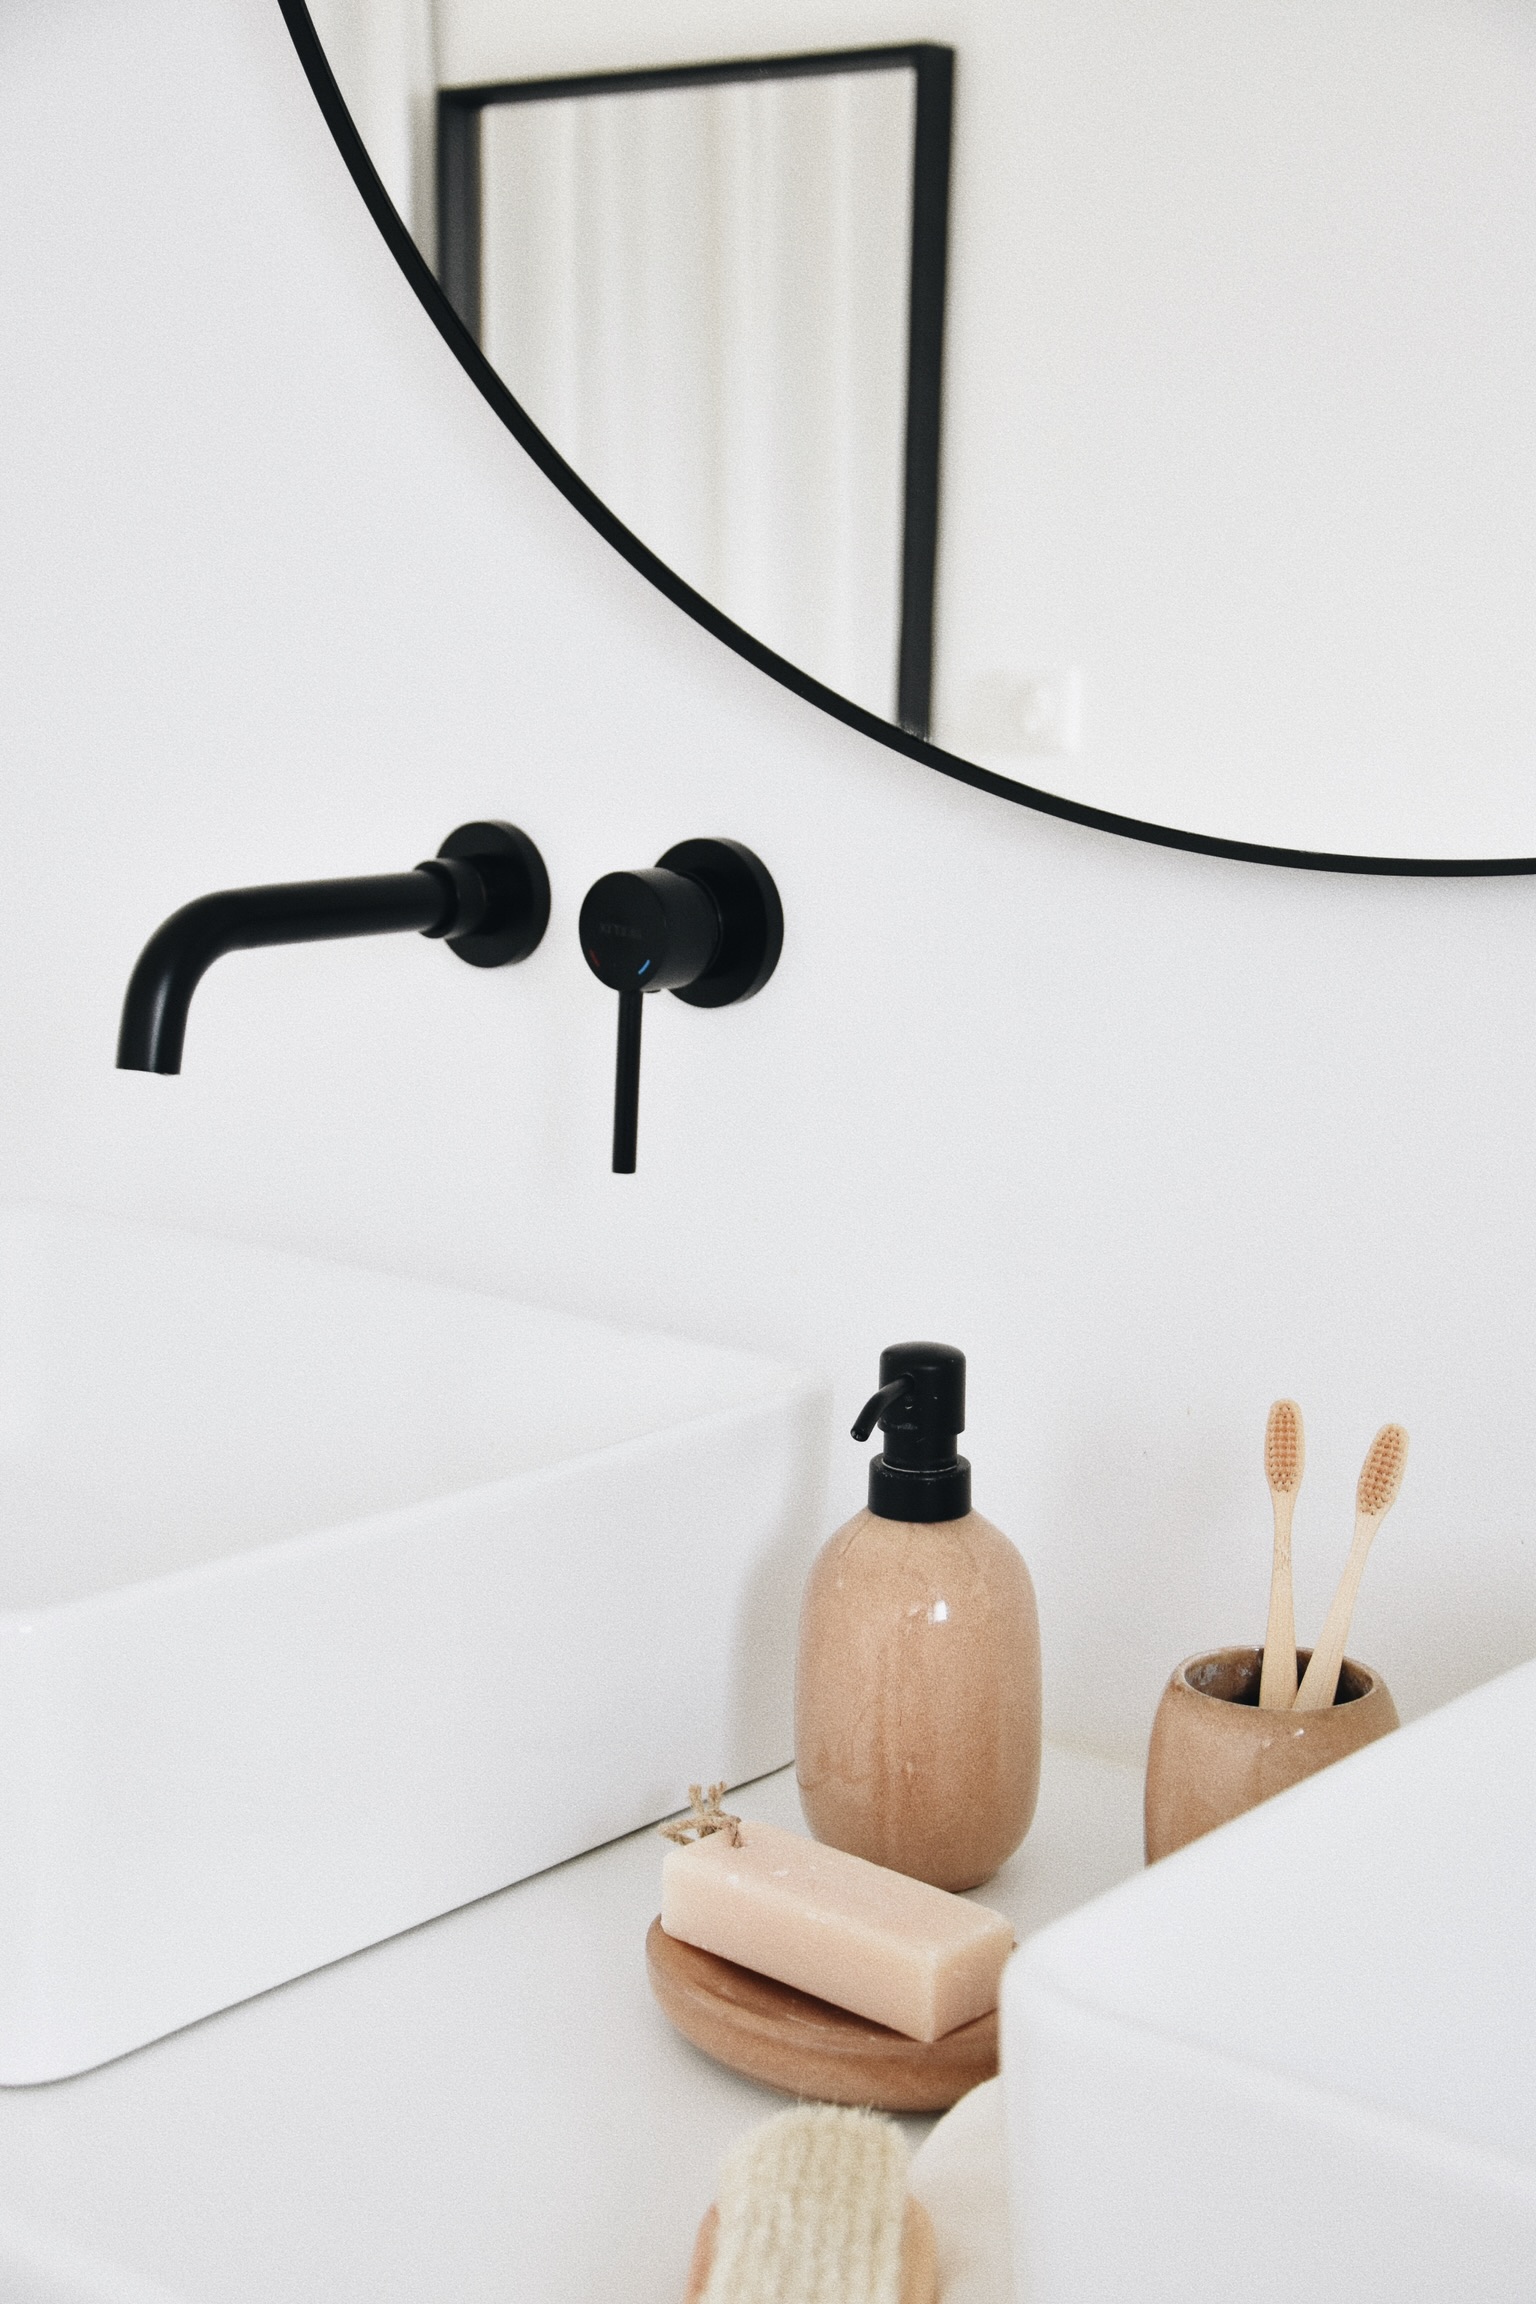 Au design épuré et minimaliste, la robinetterie encastrée offre un look moderne et sophistiqué